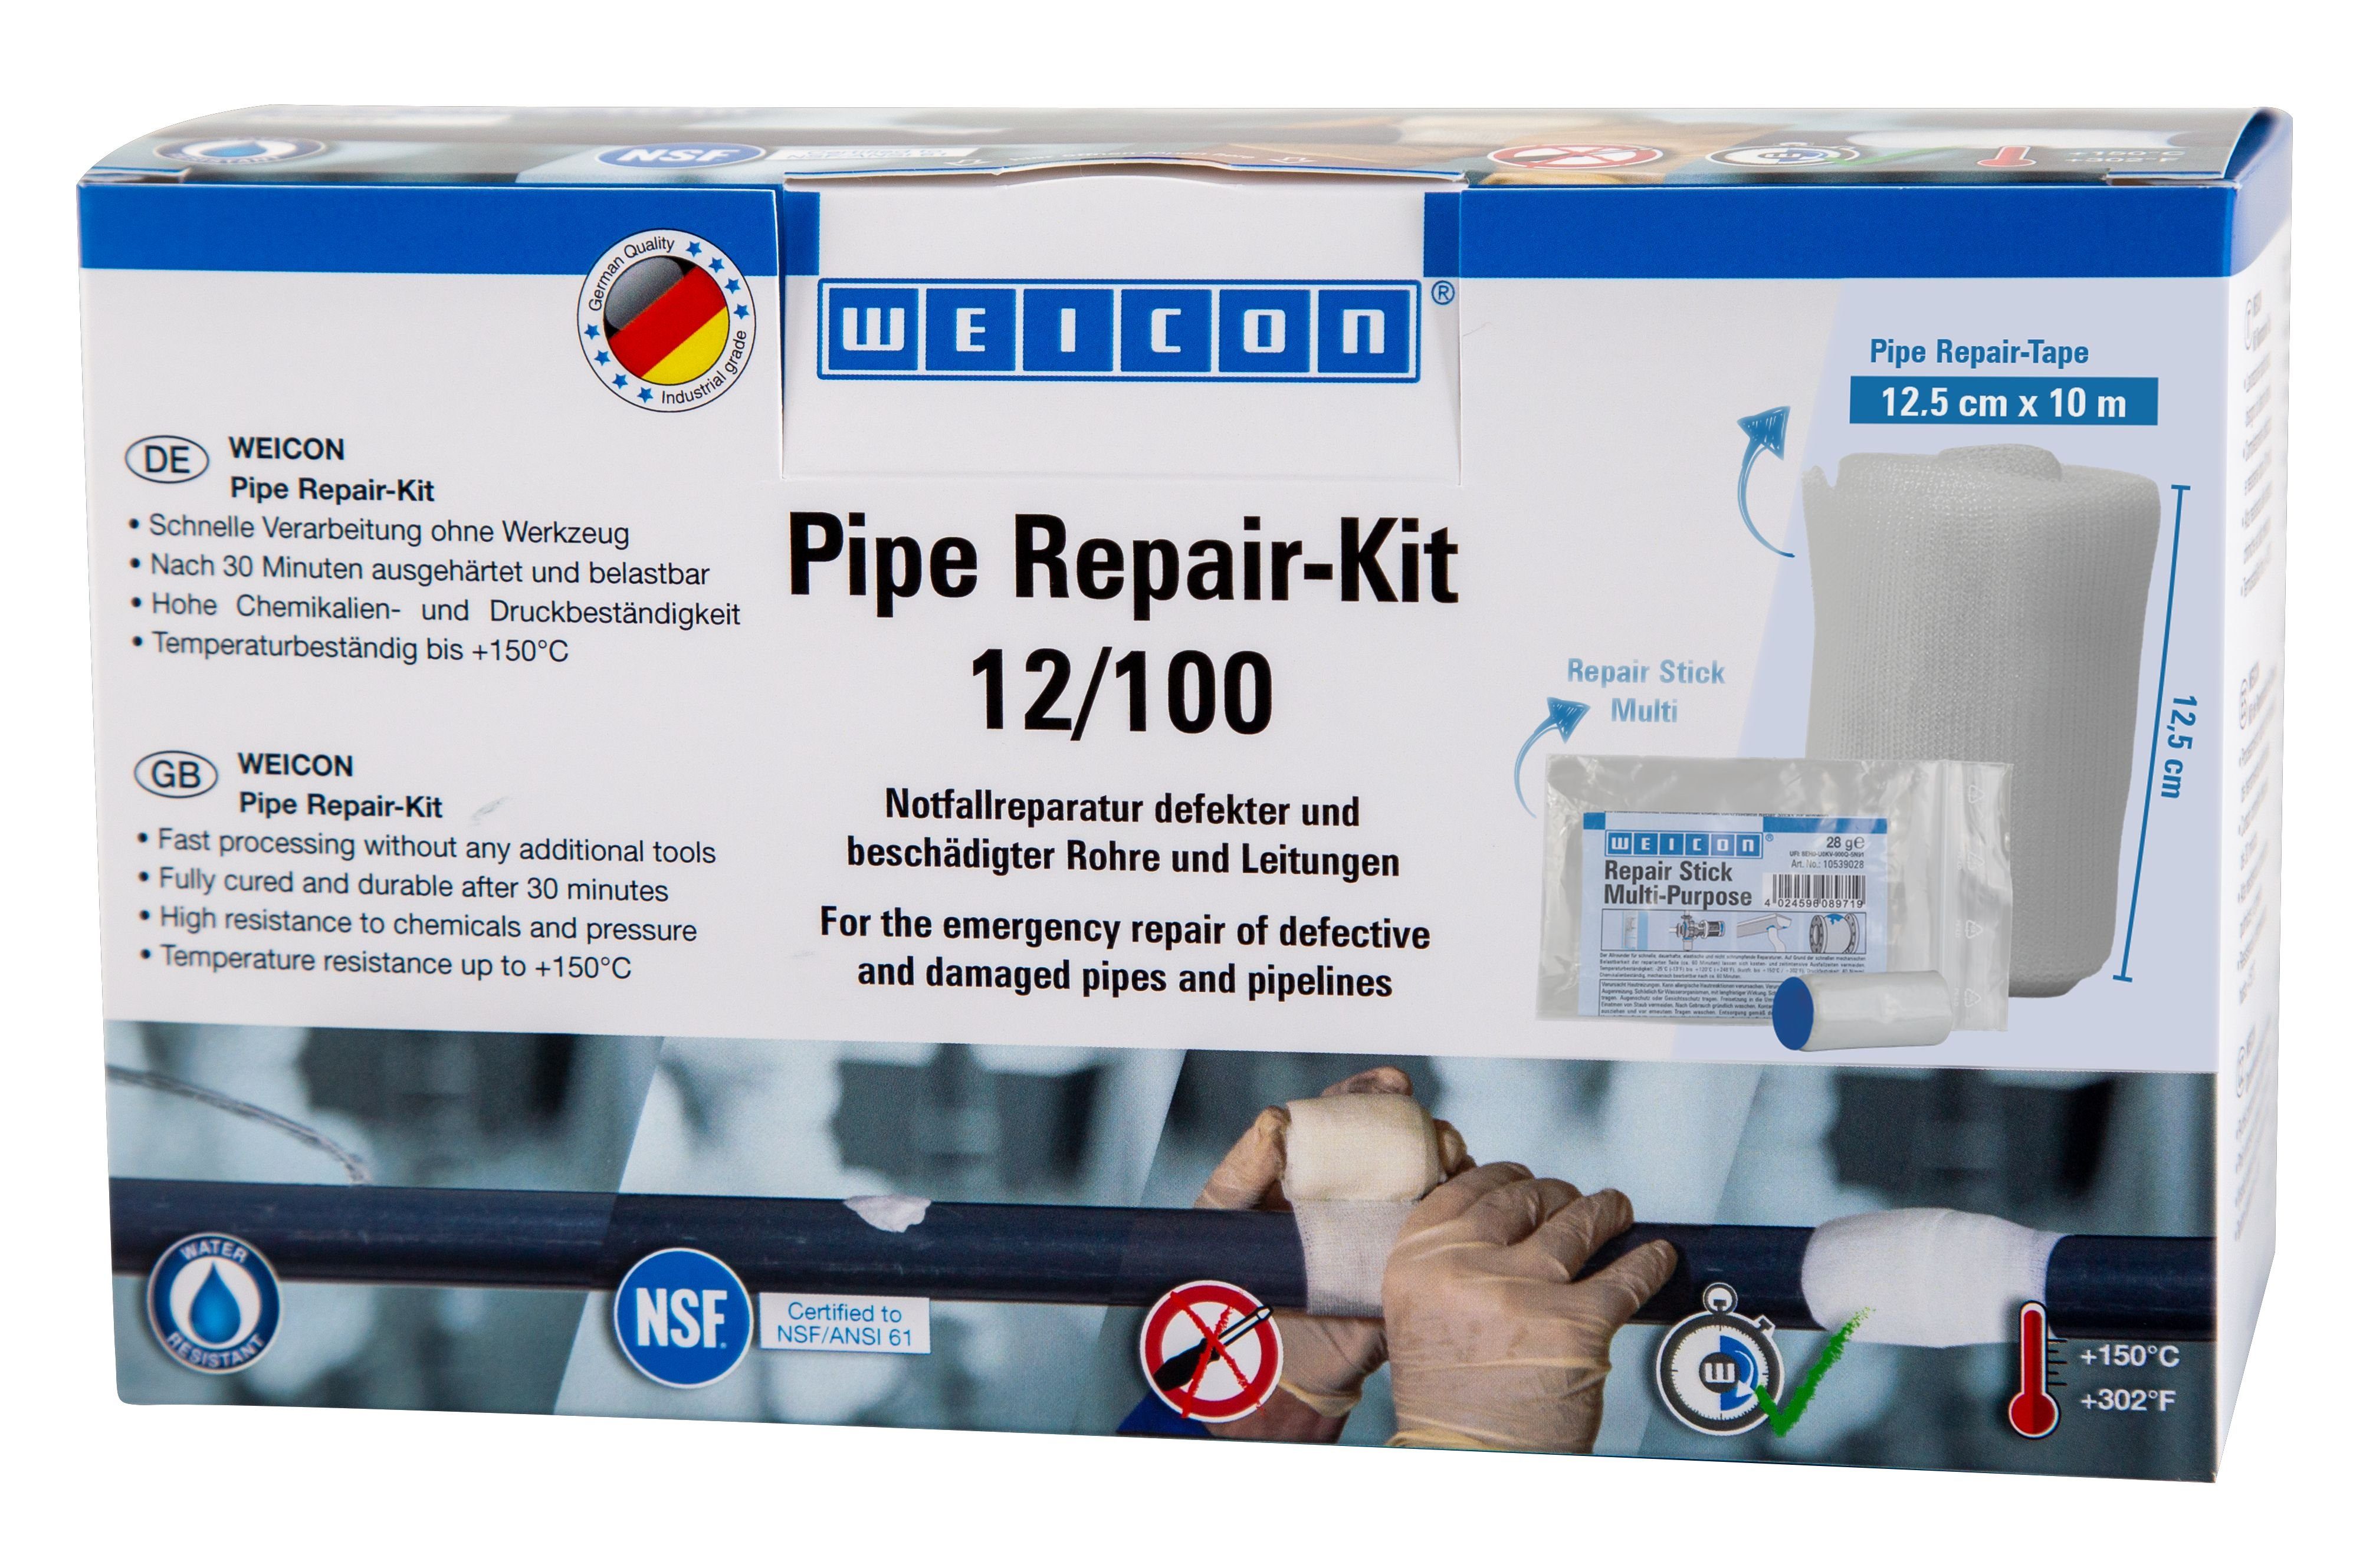 WEICON Reparatur-Set Pipe Repair-Kit, Notfall-Reparatur beschädigter Rohre und Leitungen 10 m x 12,5 cm